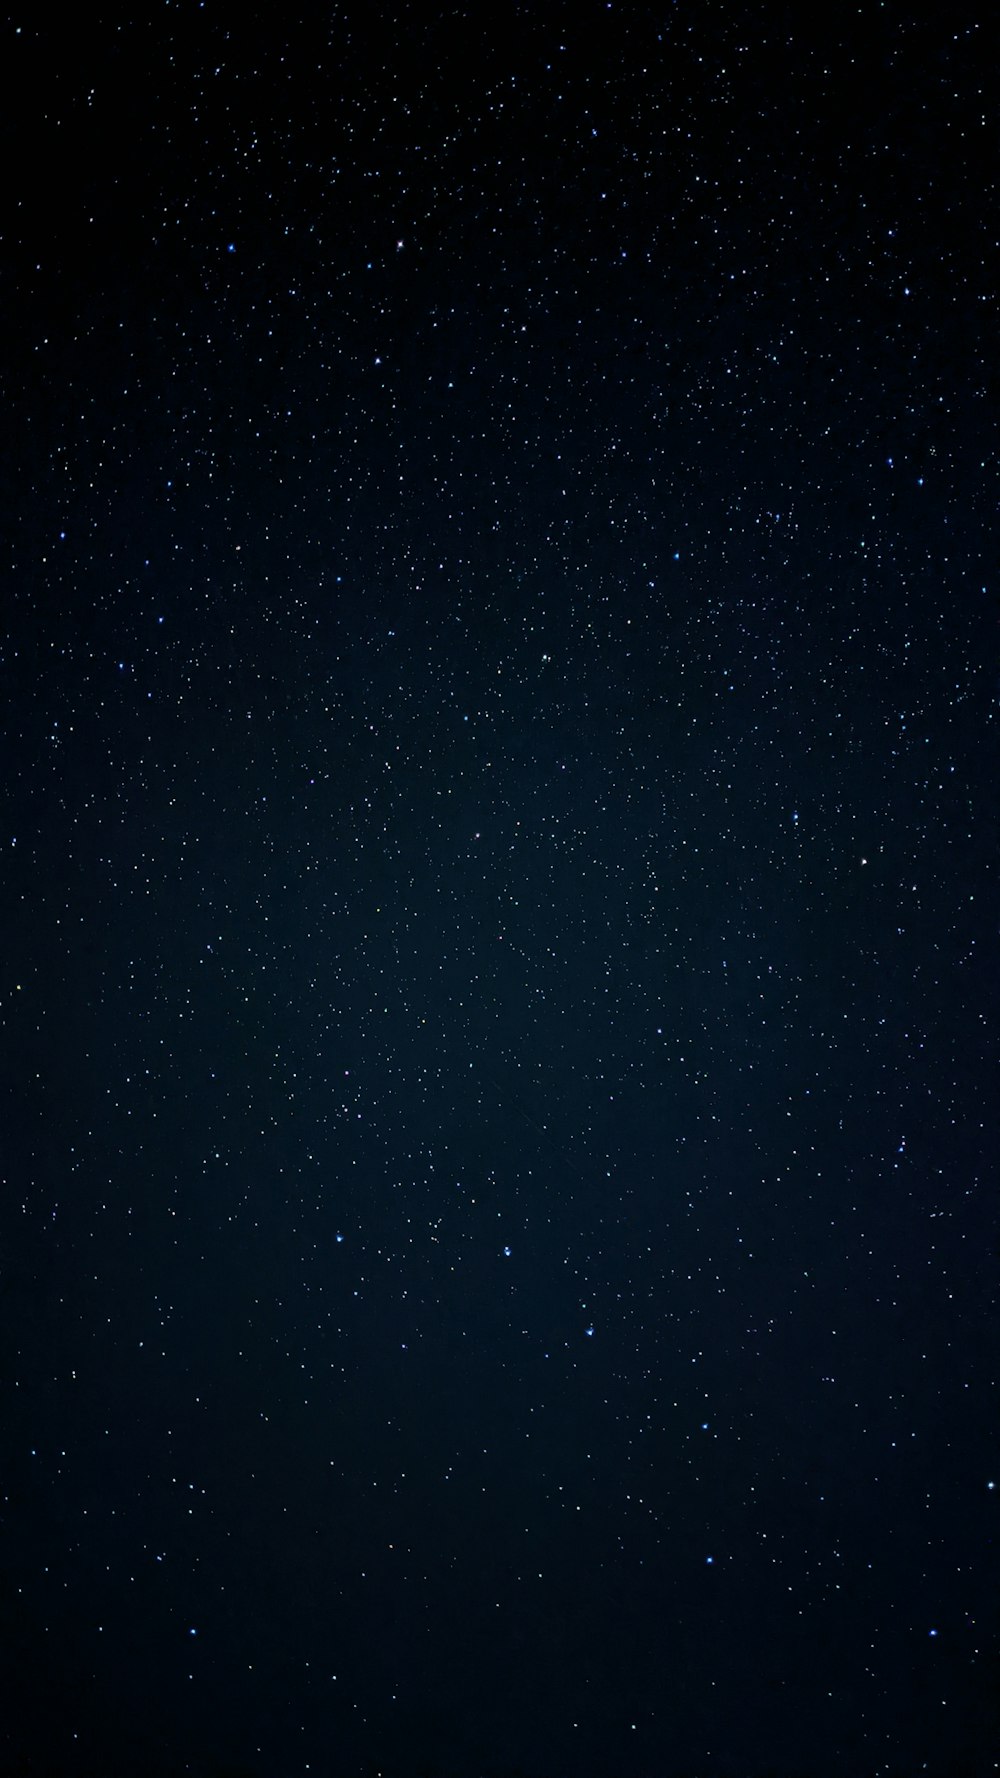 estrelas pretas e brancas durante a noite